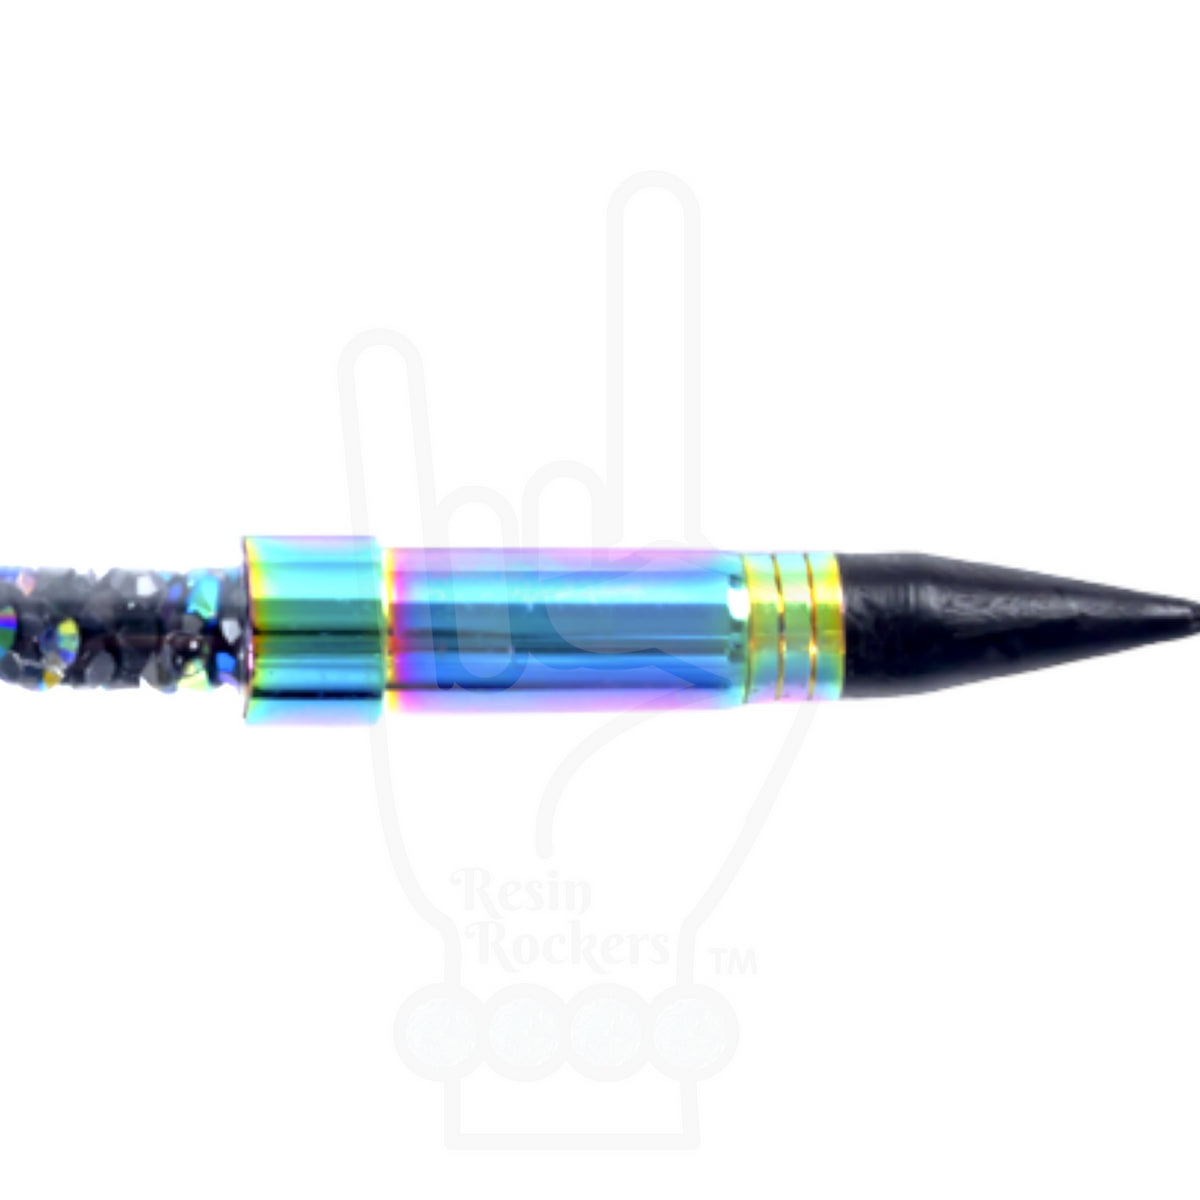 Wax Pen for Rhinestones Bling Pen Wax Pen Rhinestones 